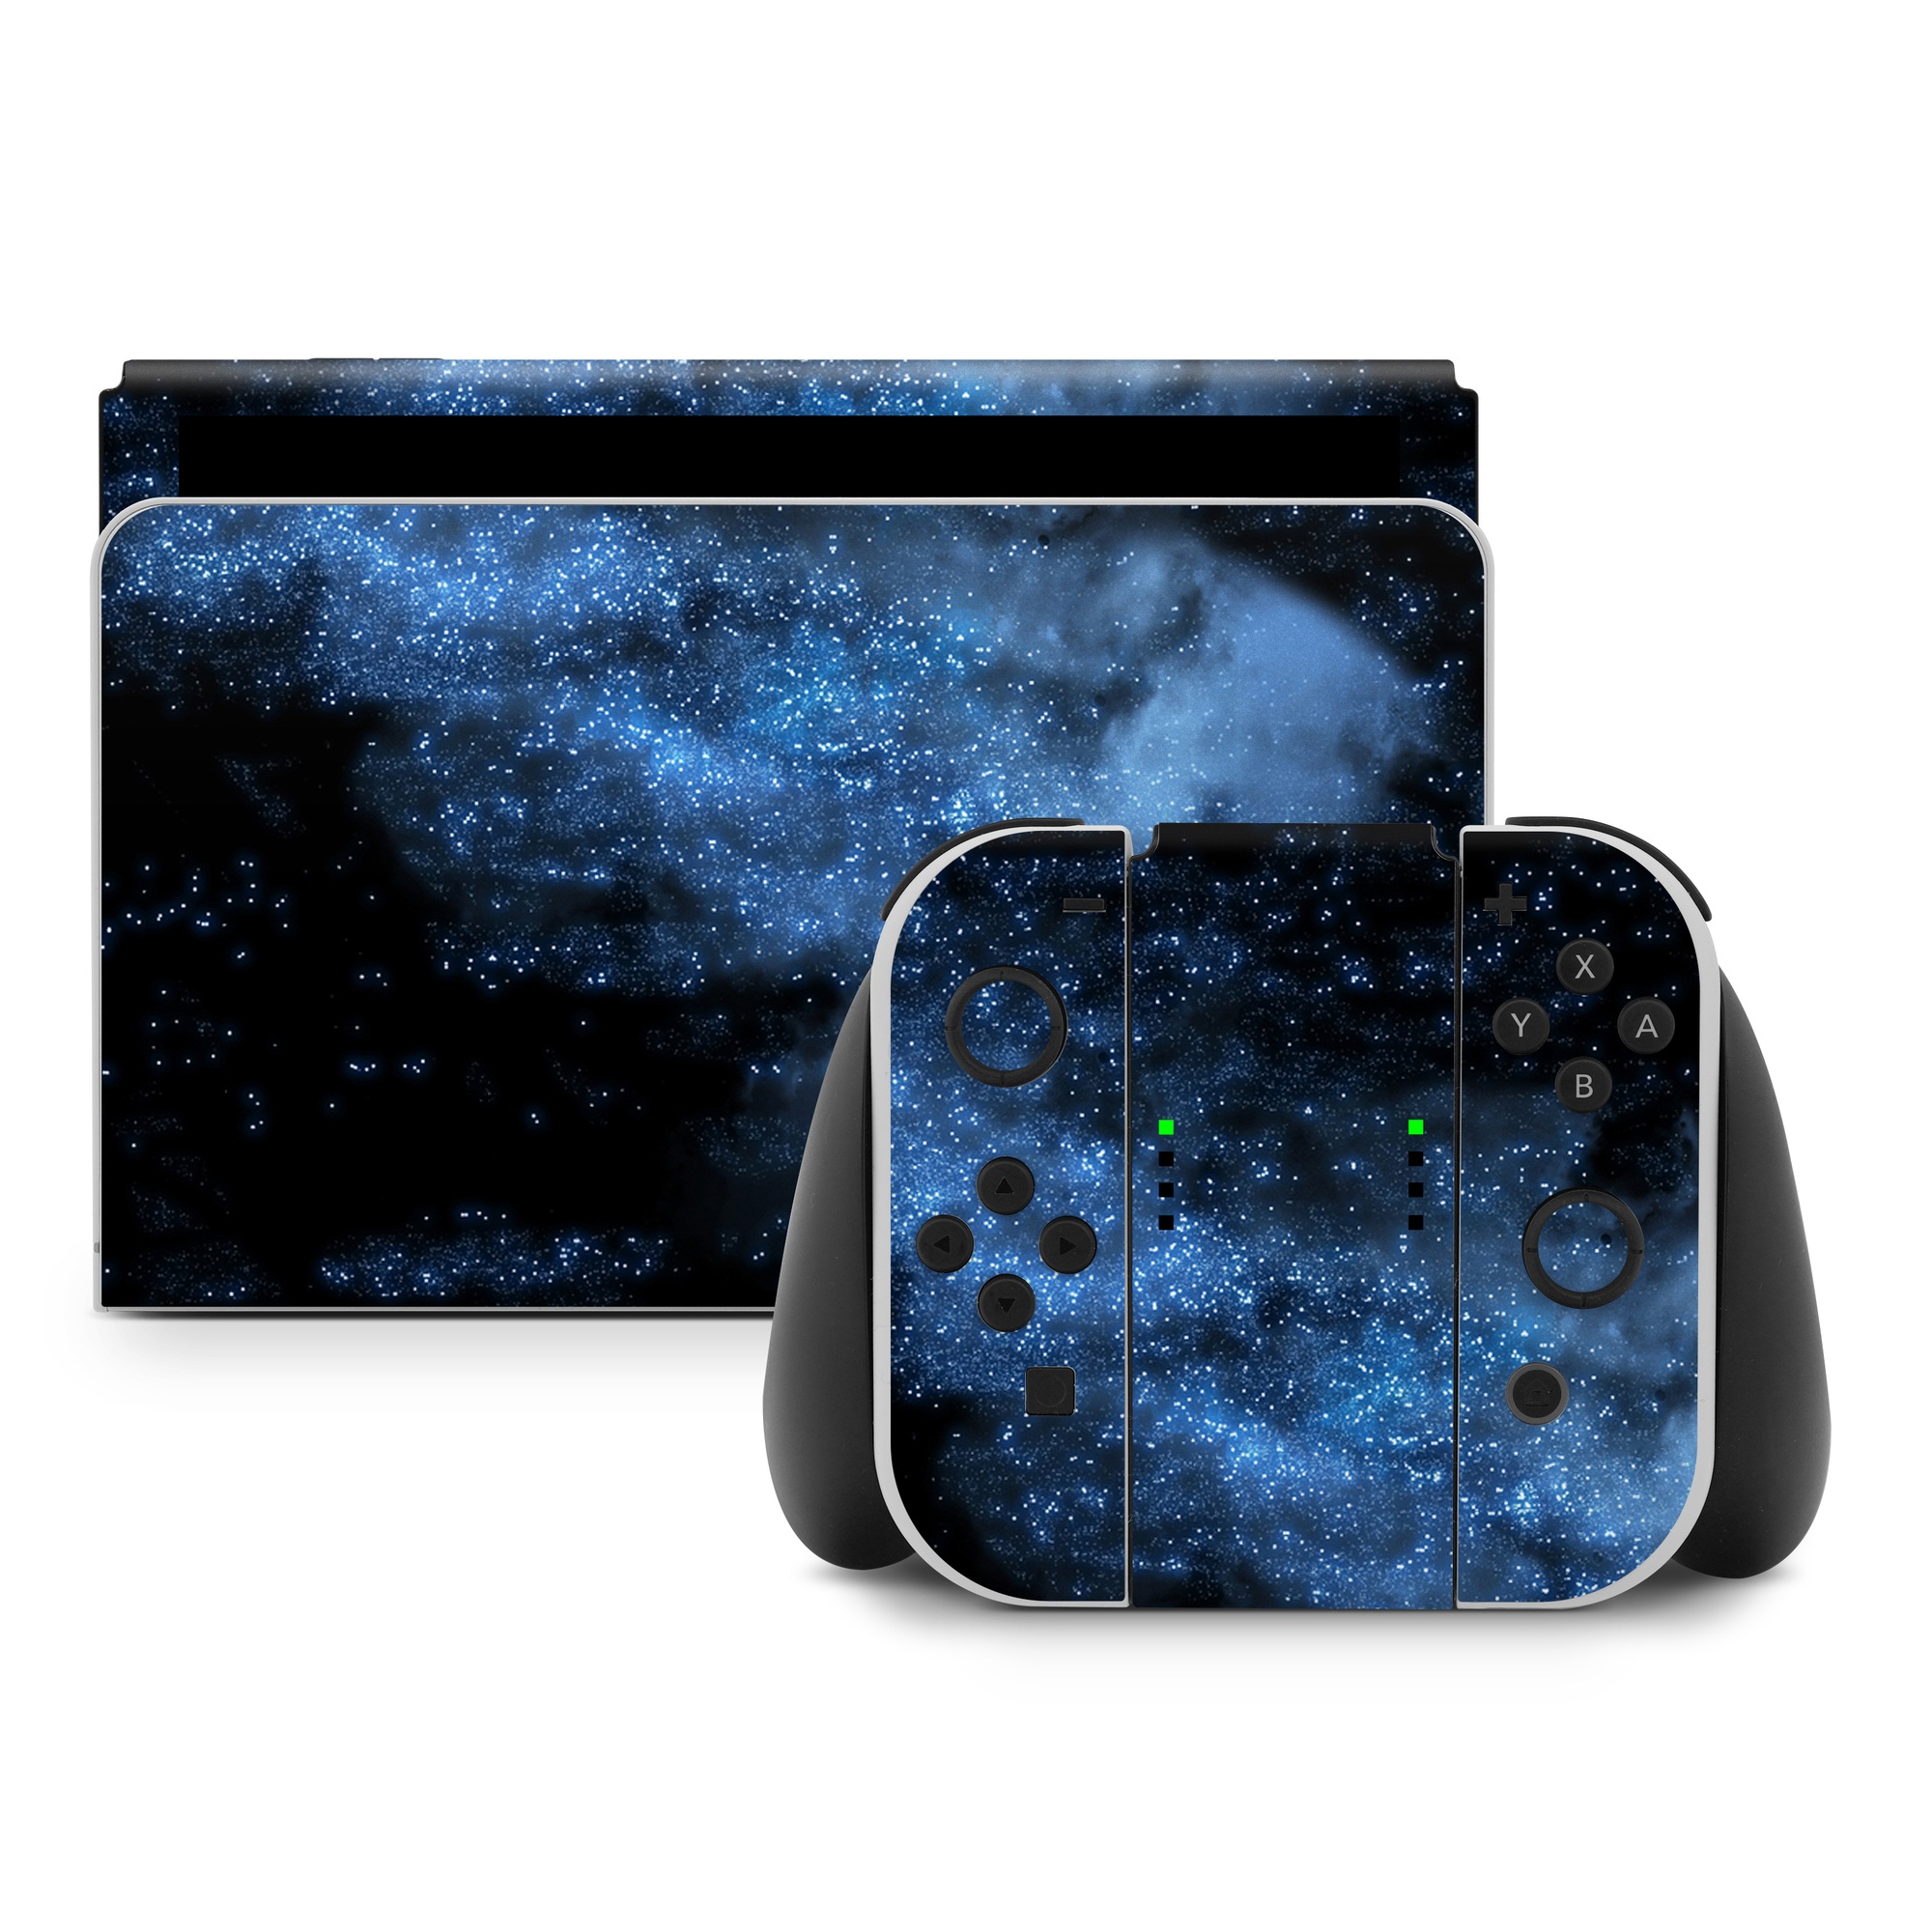 Nintendo Switch Skin - Milky Way (Image 1)